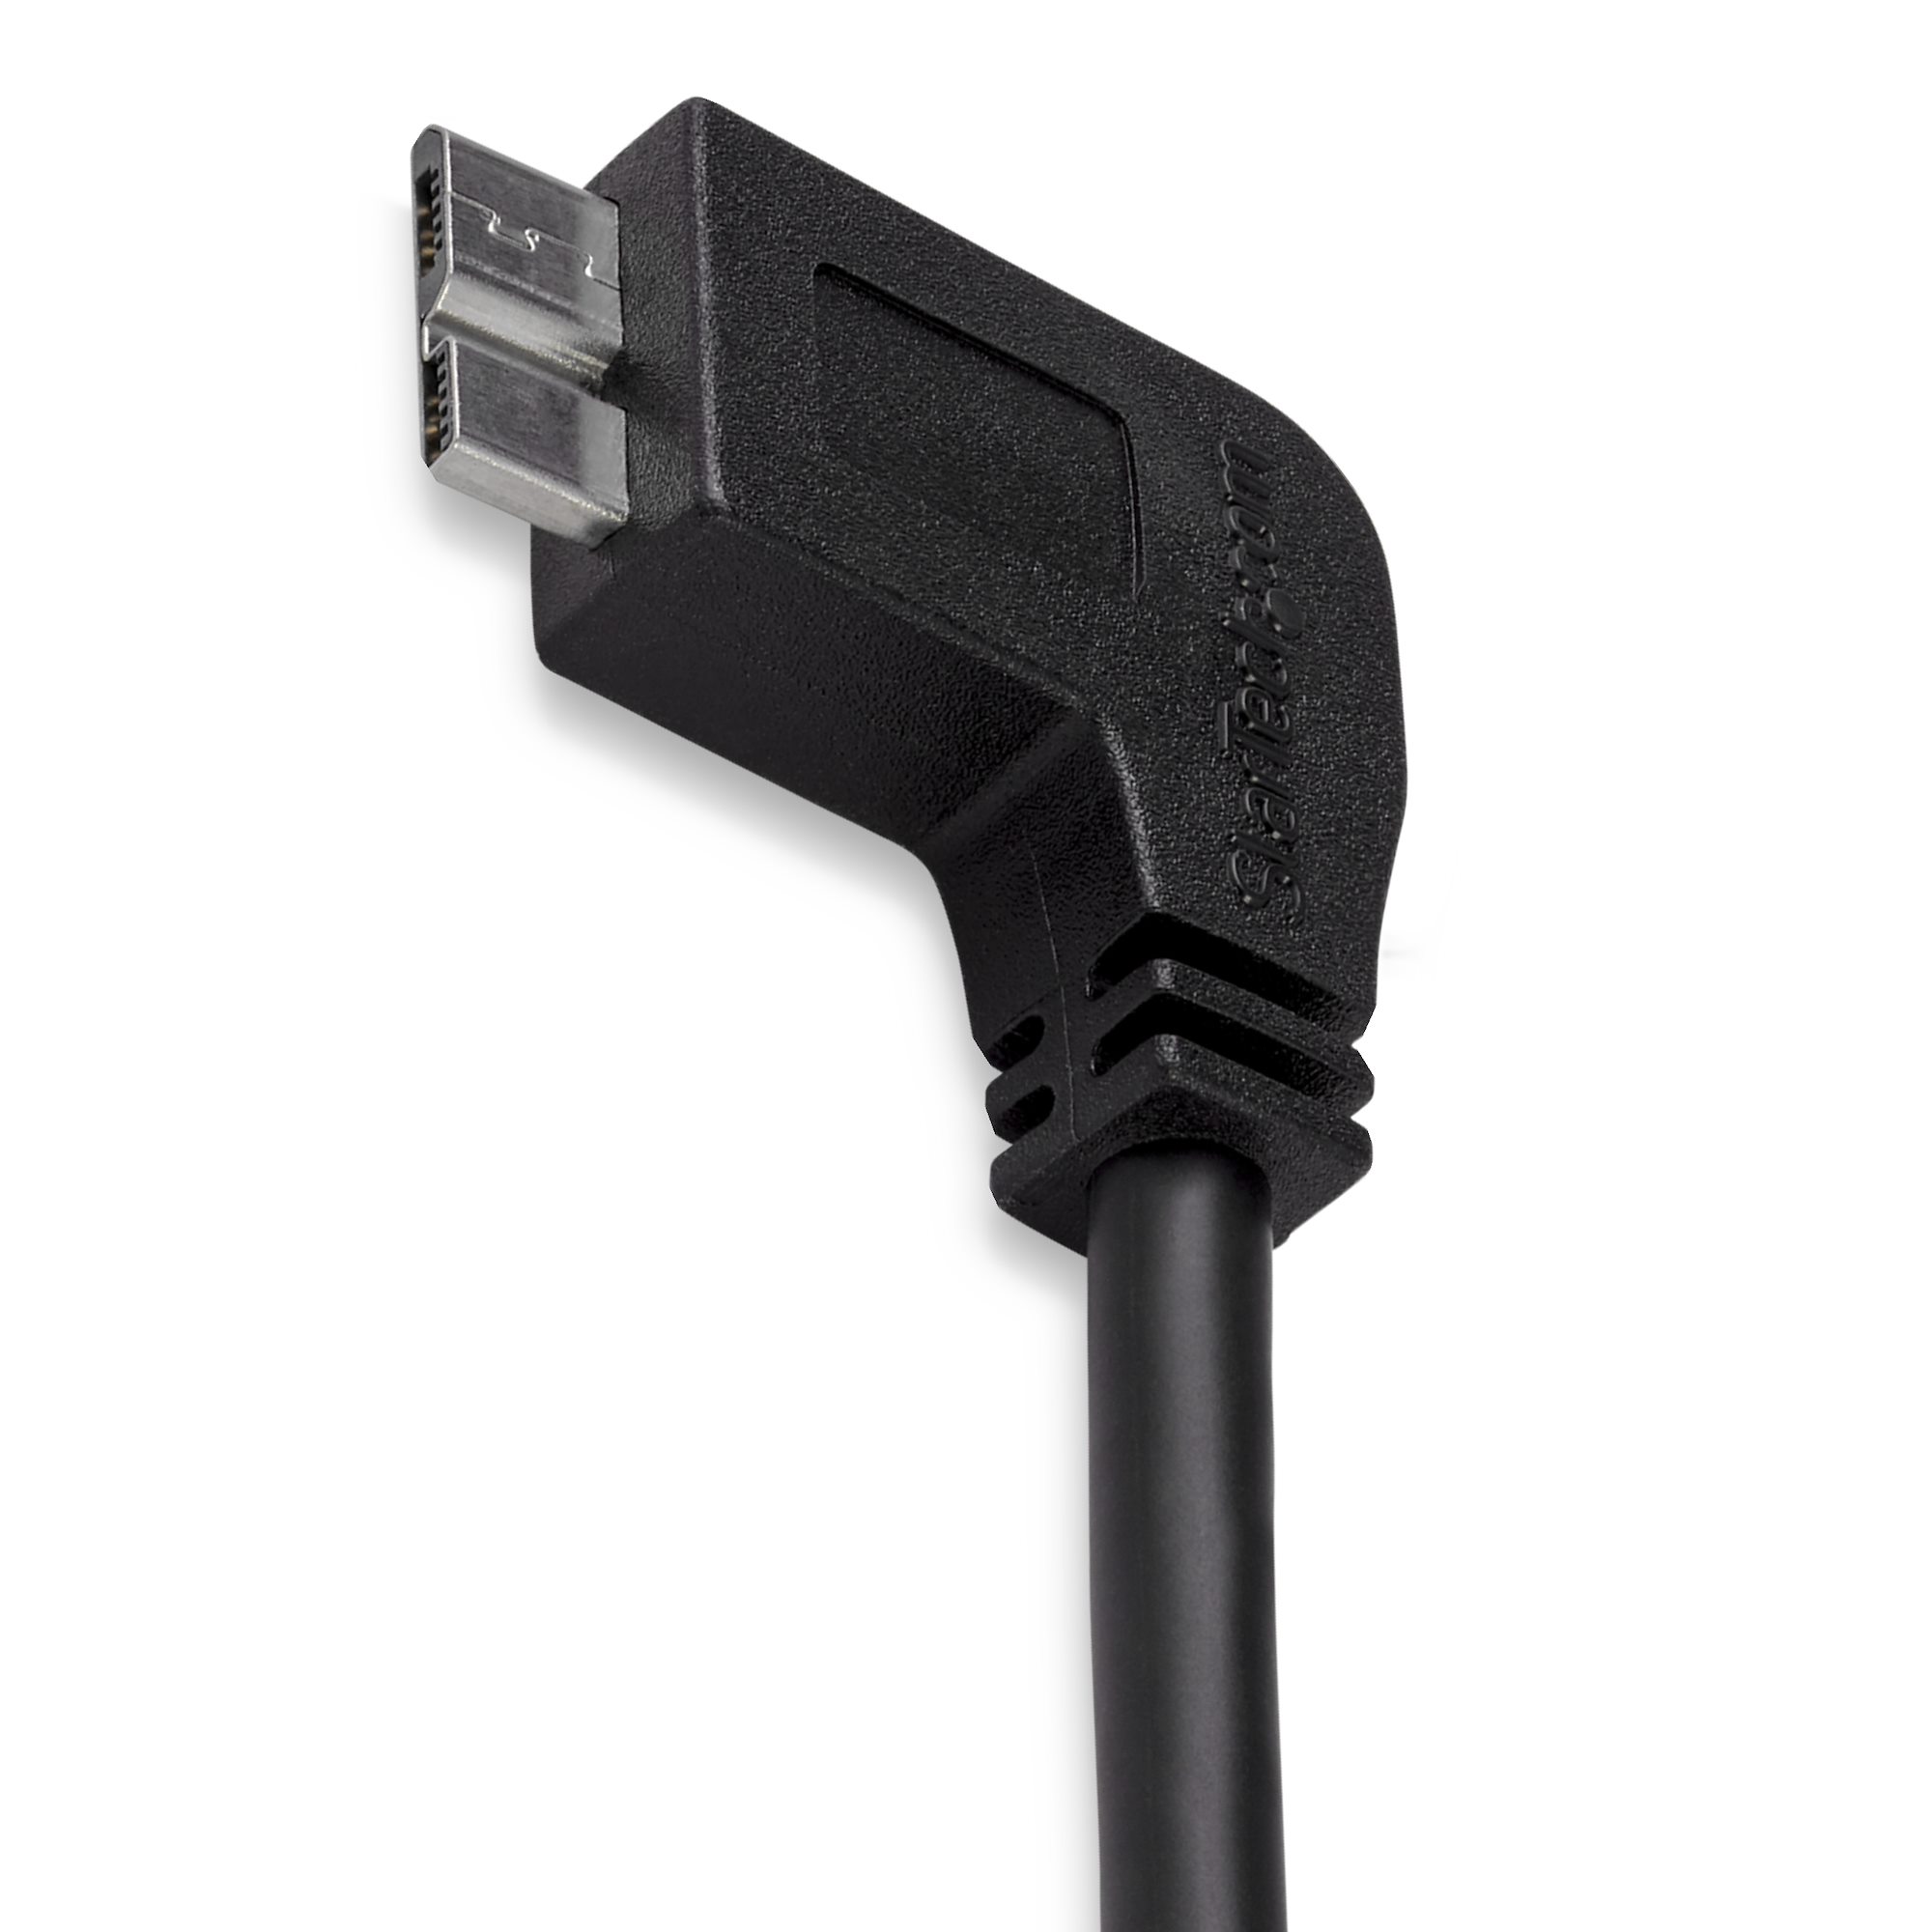 1m USB 2.0ケーブル USB Micro-B オス (5ピン) USB Type-C オス (24ピン) リバーシブルデザイン USB  2.0 480Mbps スターテック 全使用期間保証 通販